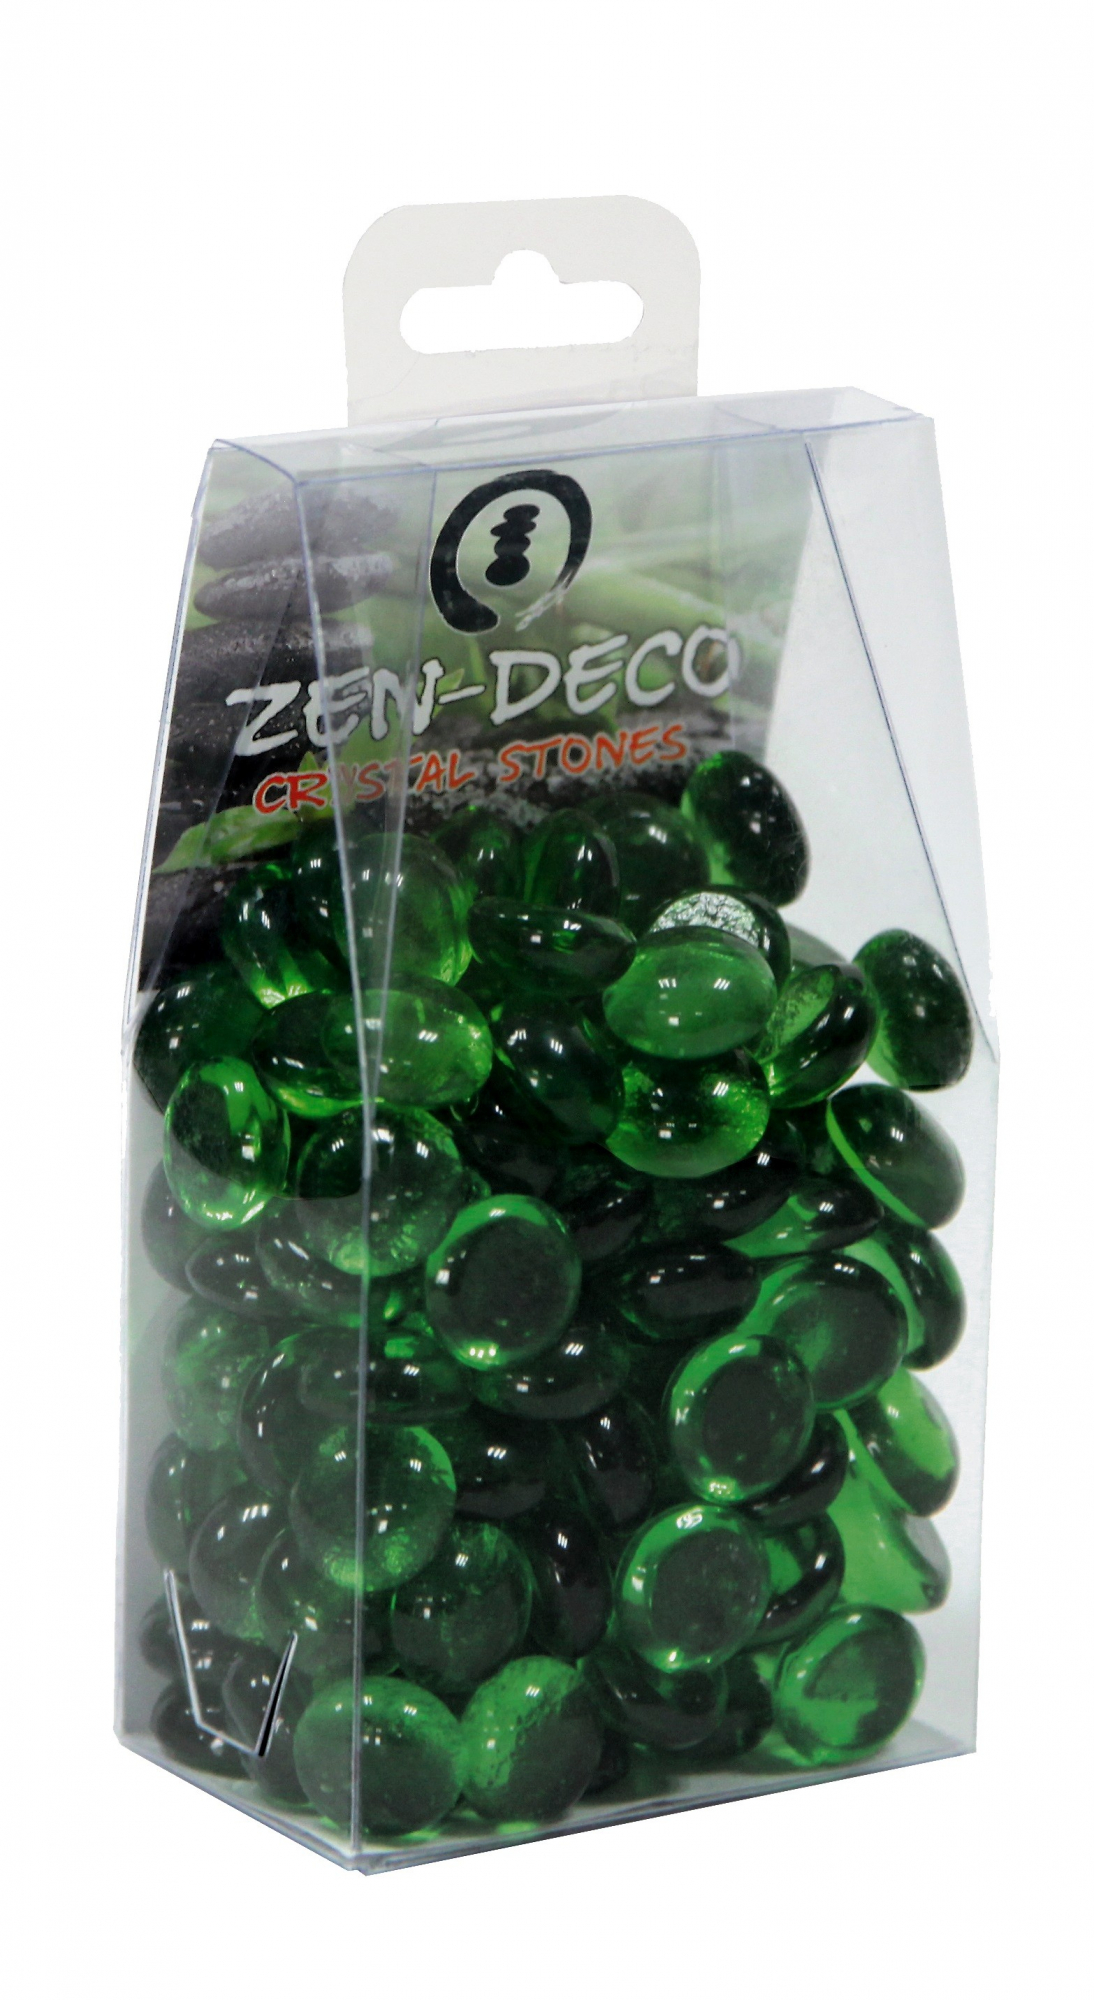 SuperFish Zen Deco - Crystal Stones ciottoli vetro